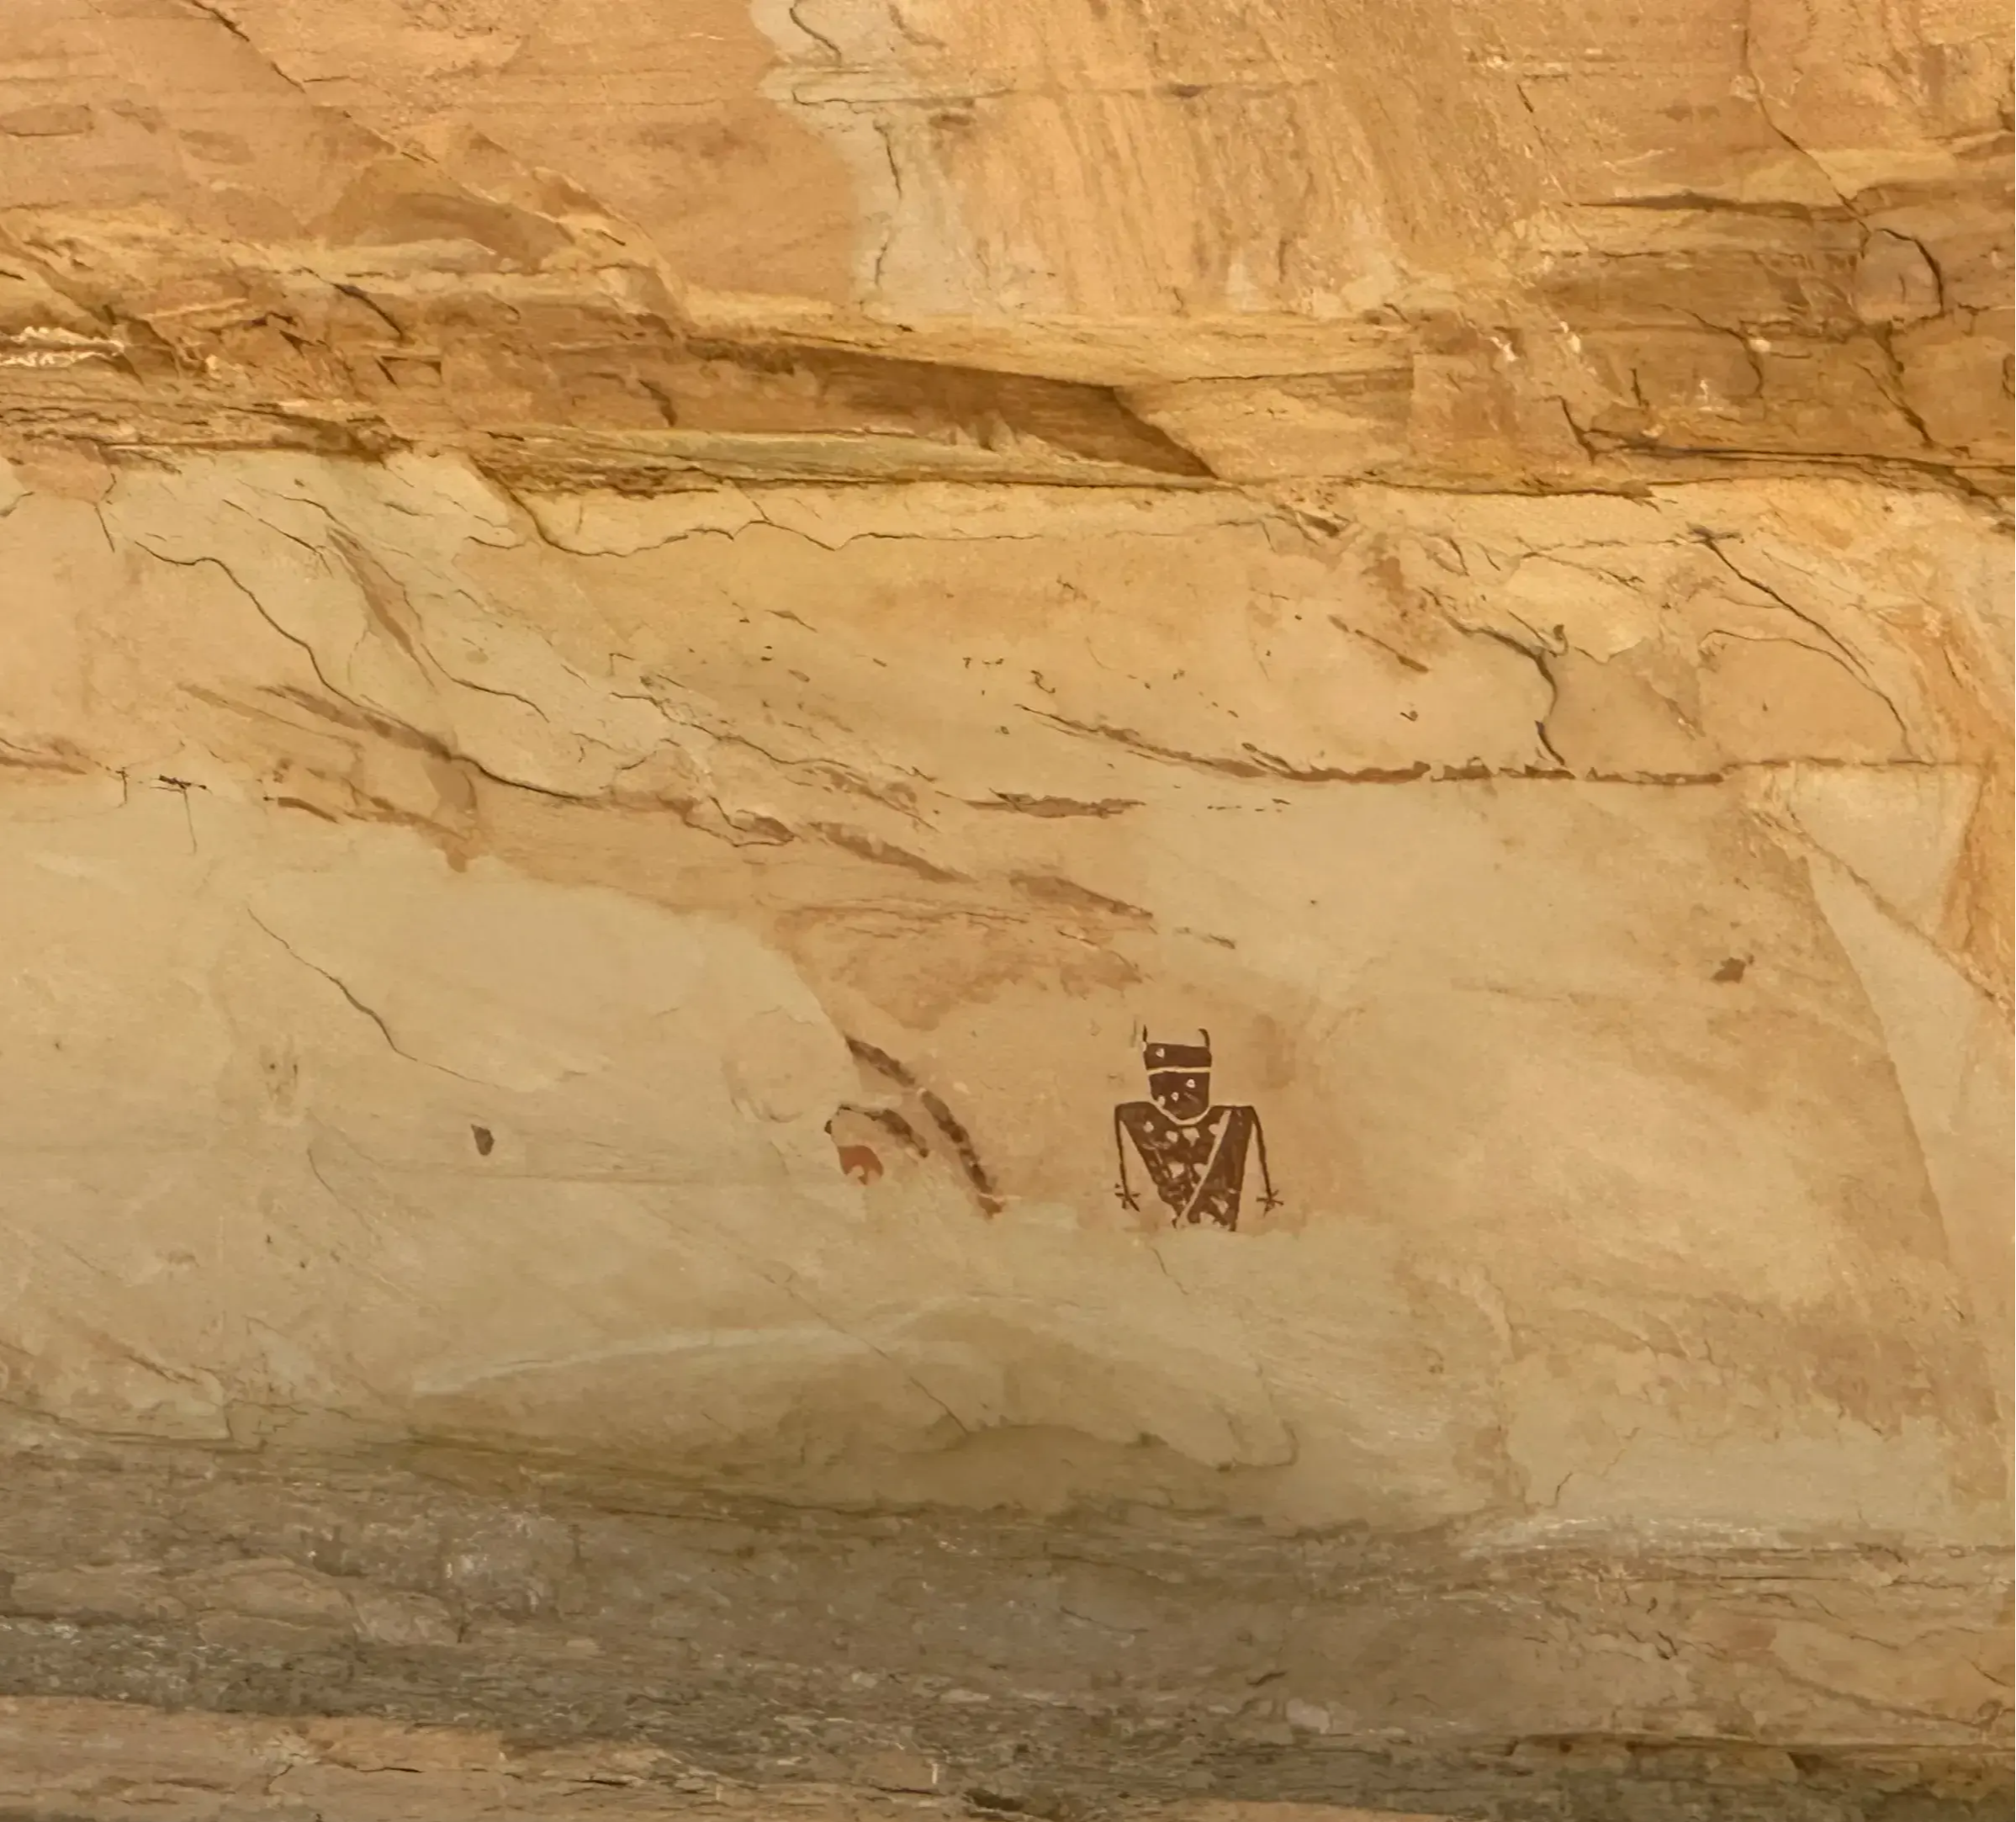  petroglyphs at moab